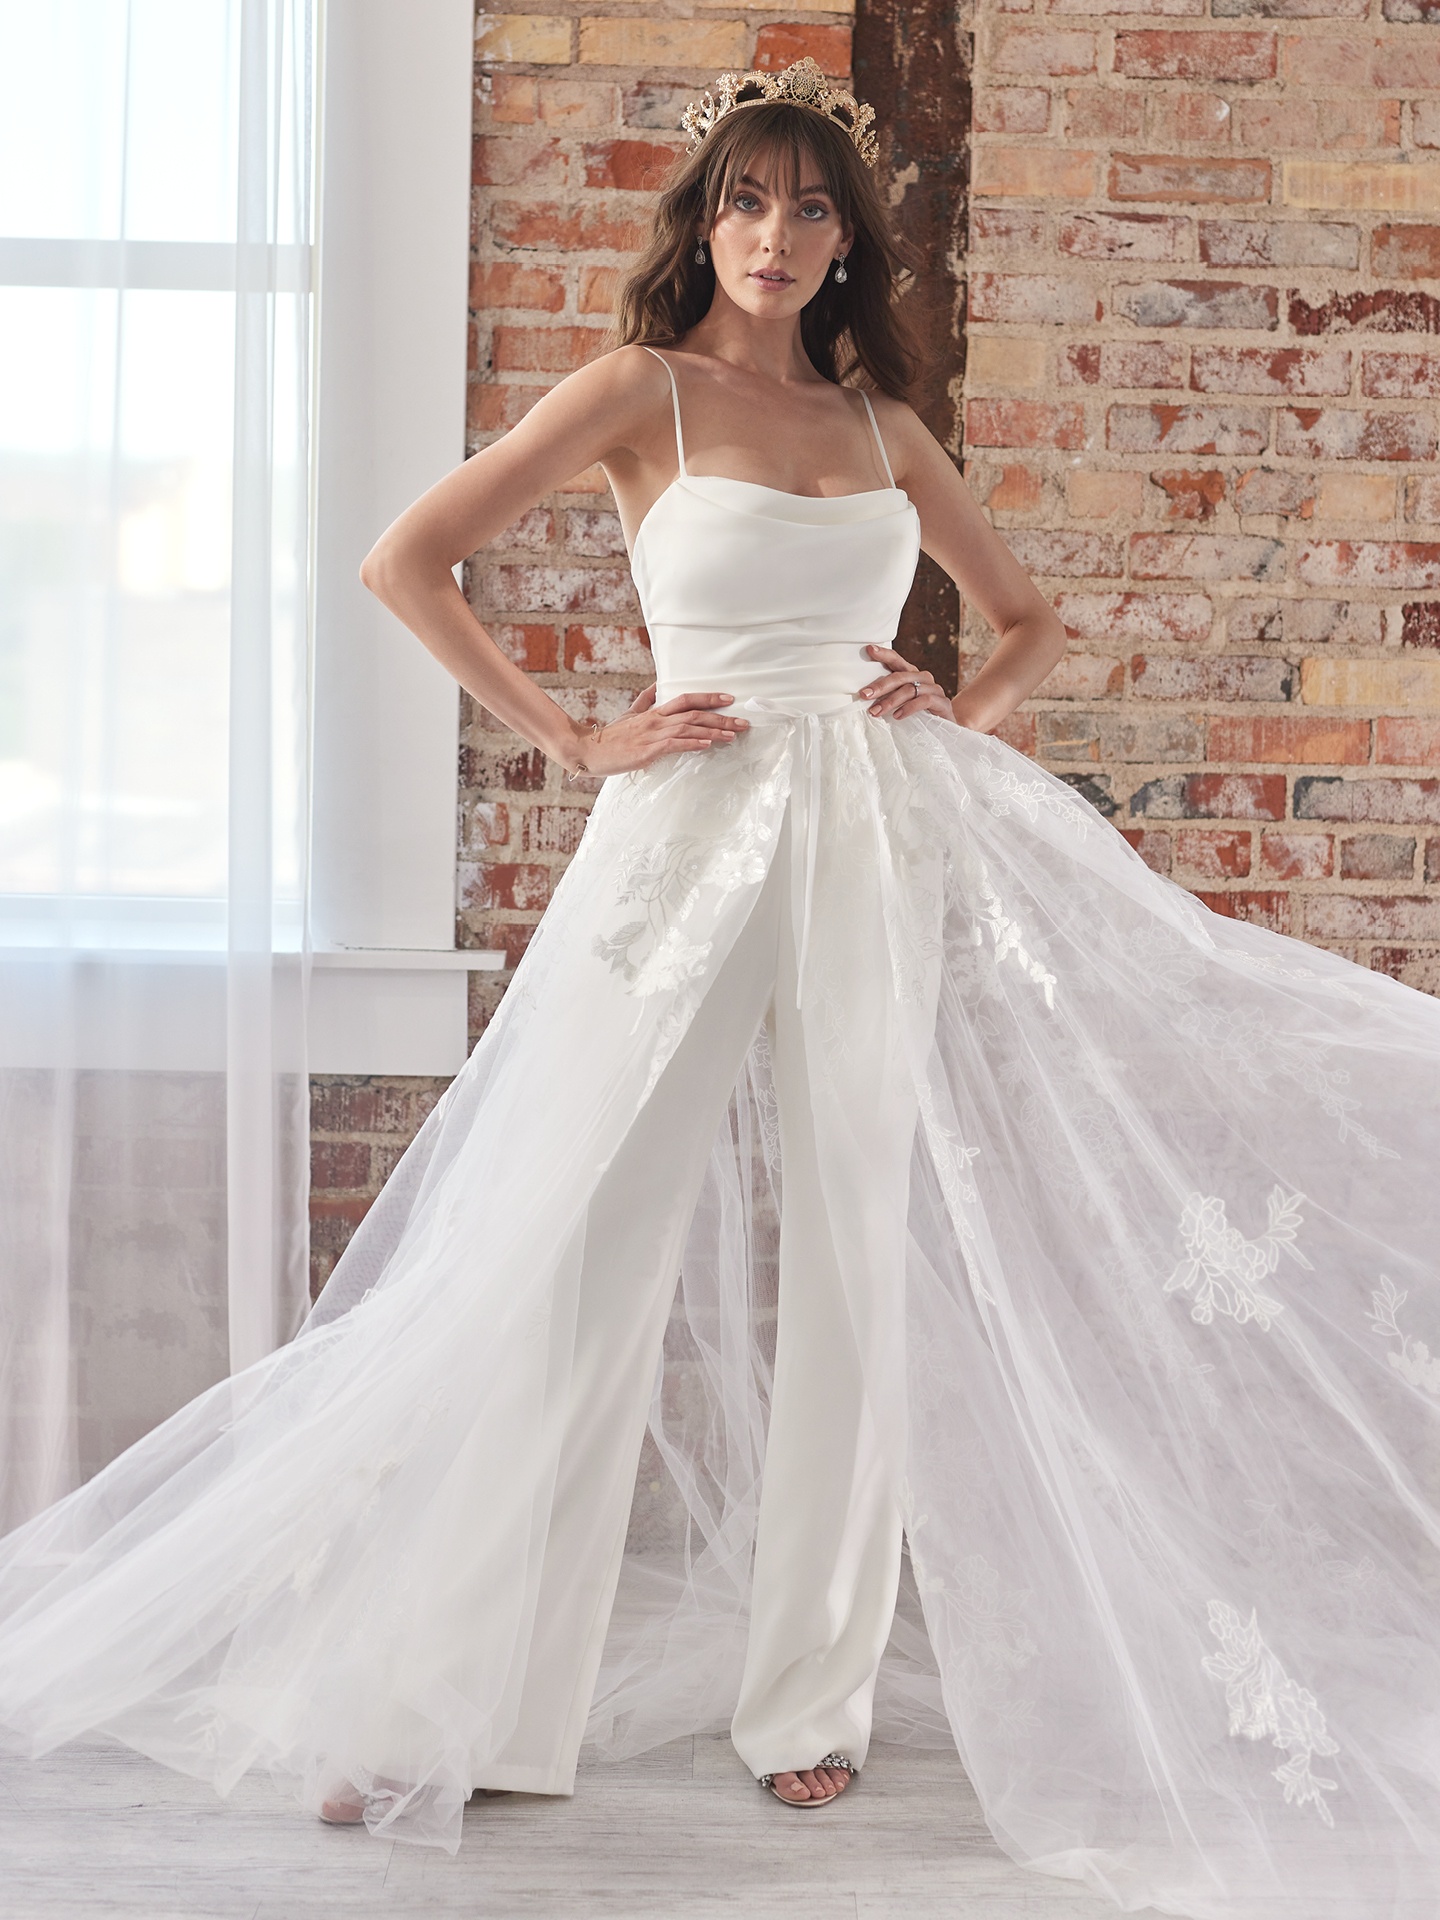 Kenzi IVORY Bridal Jumpsuit by Olya Mak | Fashionably Yours Bridal